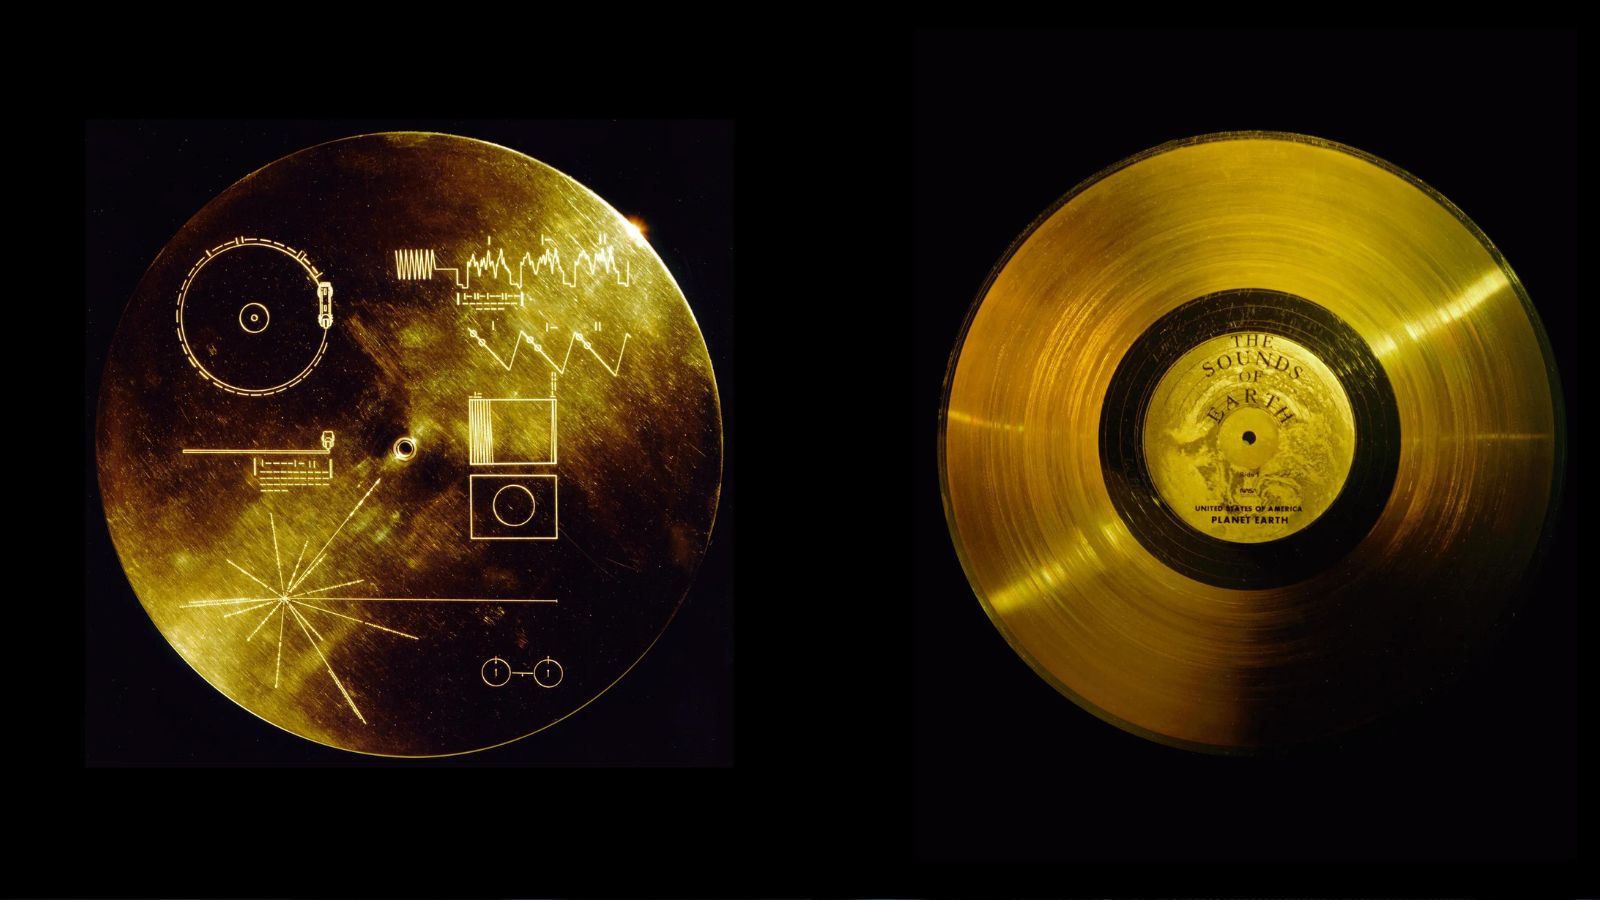 Il Golden Record, un disco cosmico contenente suoni e immagini che rappresentano la vita sulla Terra